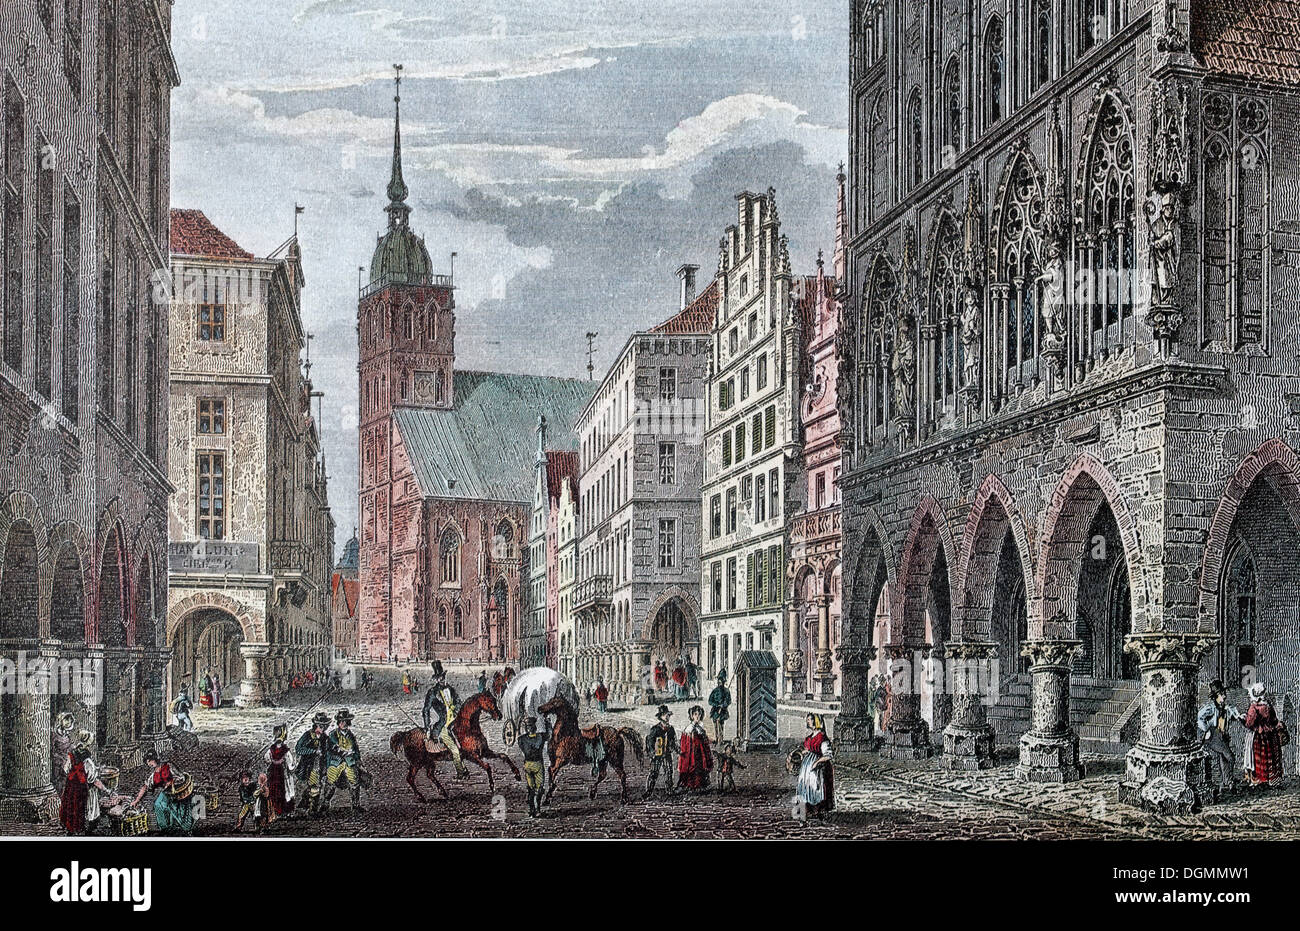 Muenster, Prinzipalmarkt piazza nel 1850, storico townscape, incisione di acciaio a partire dal xix secolo, Renania settentrionale-Vestfalia Foto Stock